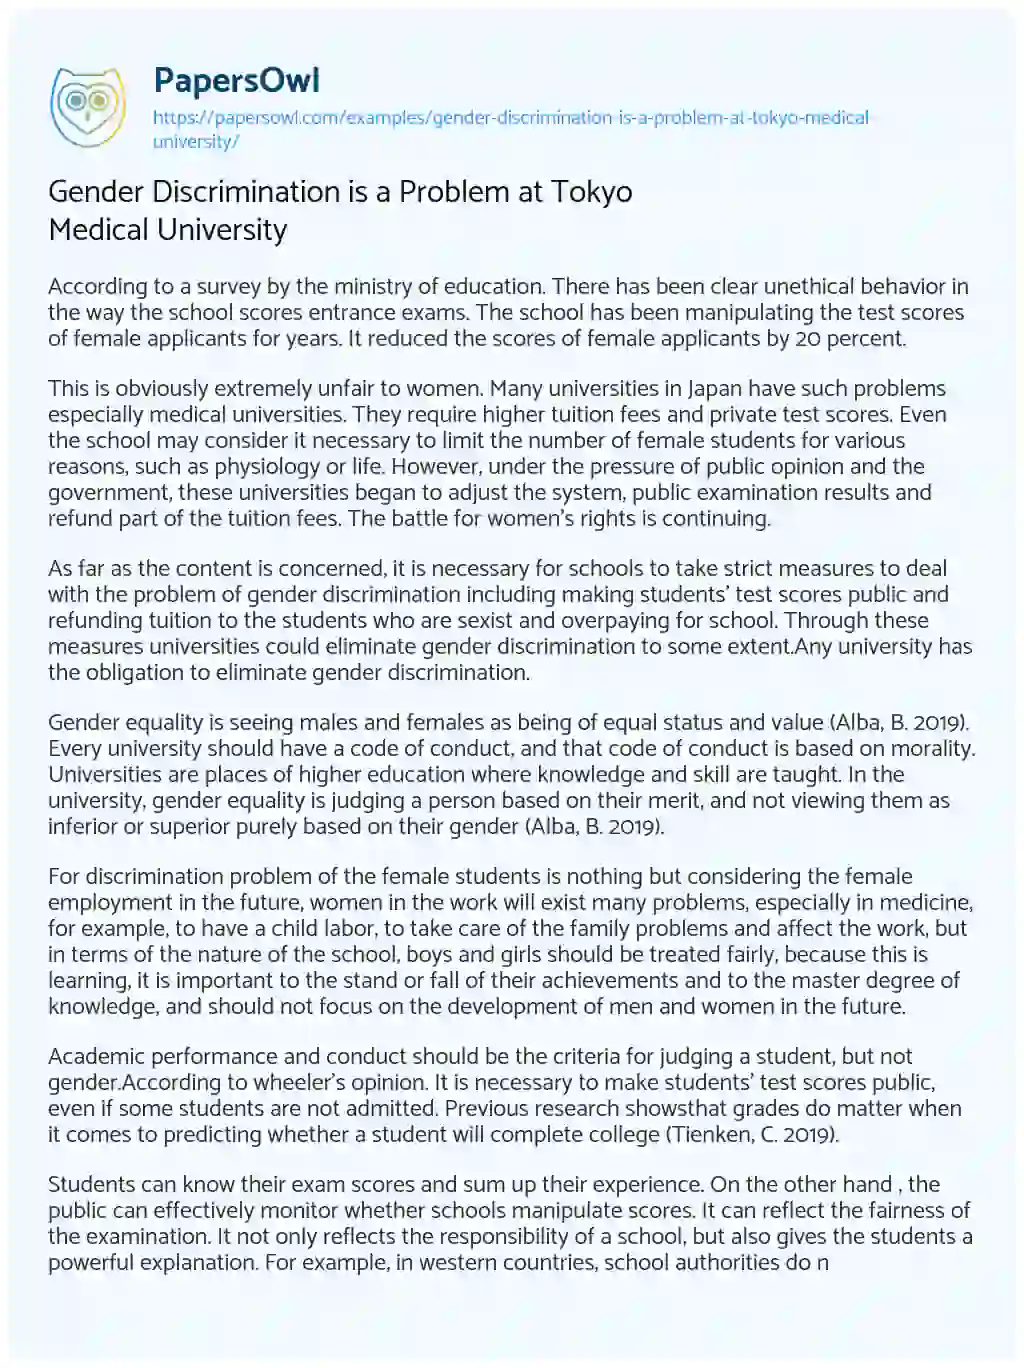 Gender Discrimination is a Problem at Tokyo Medical University essay